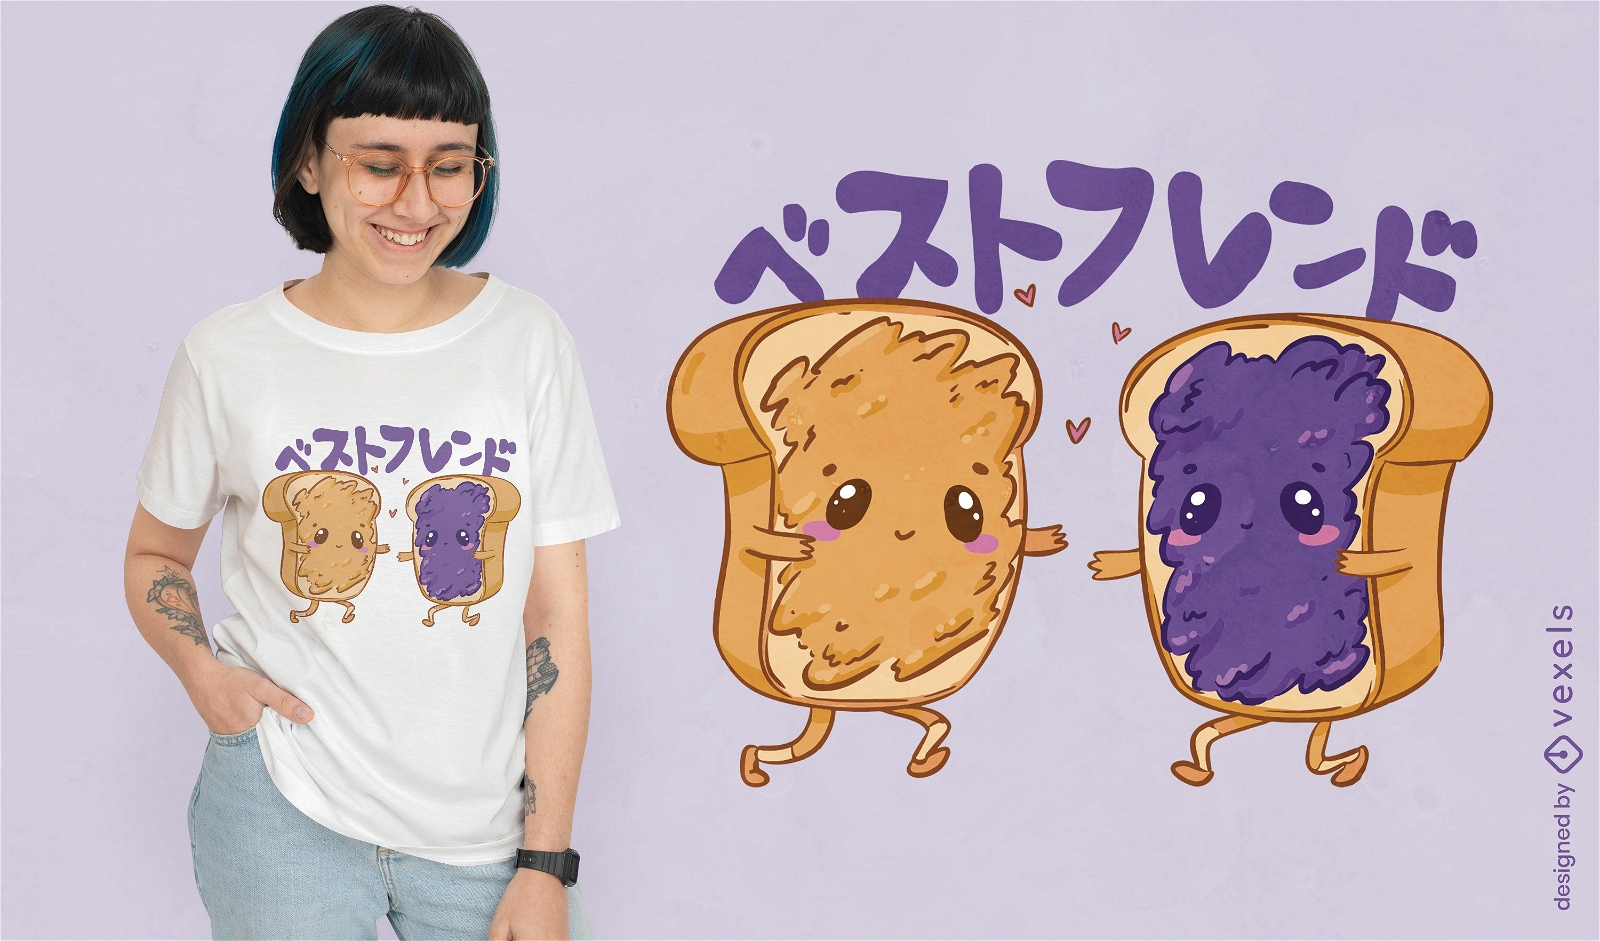 Diseño de camiseta de amigos de mantequilla de maní y jalea.